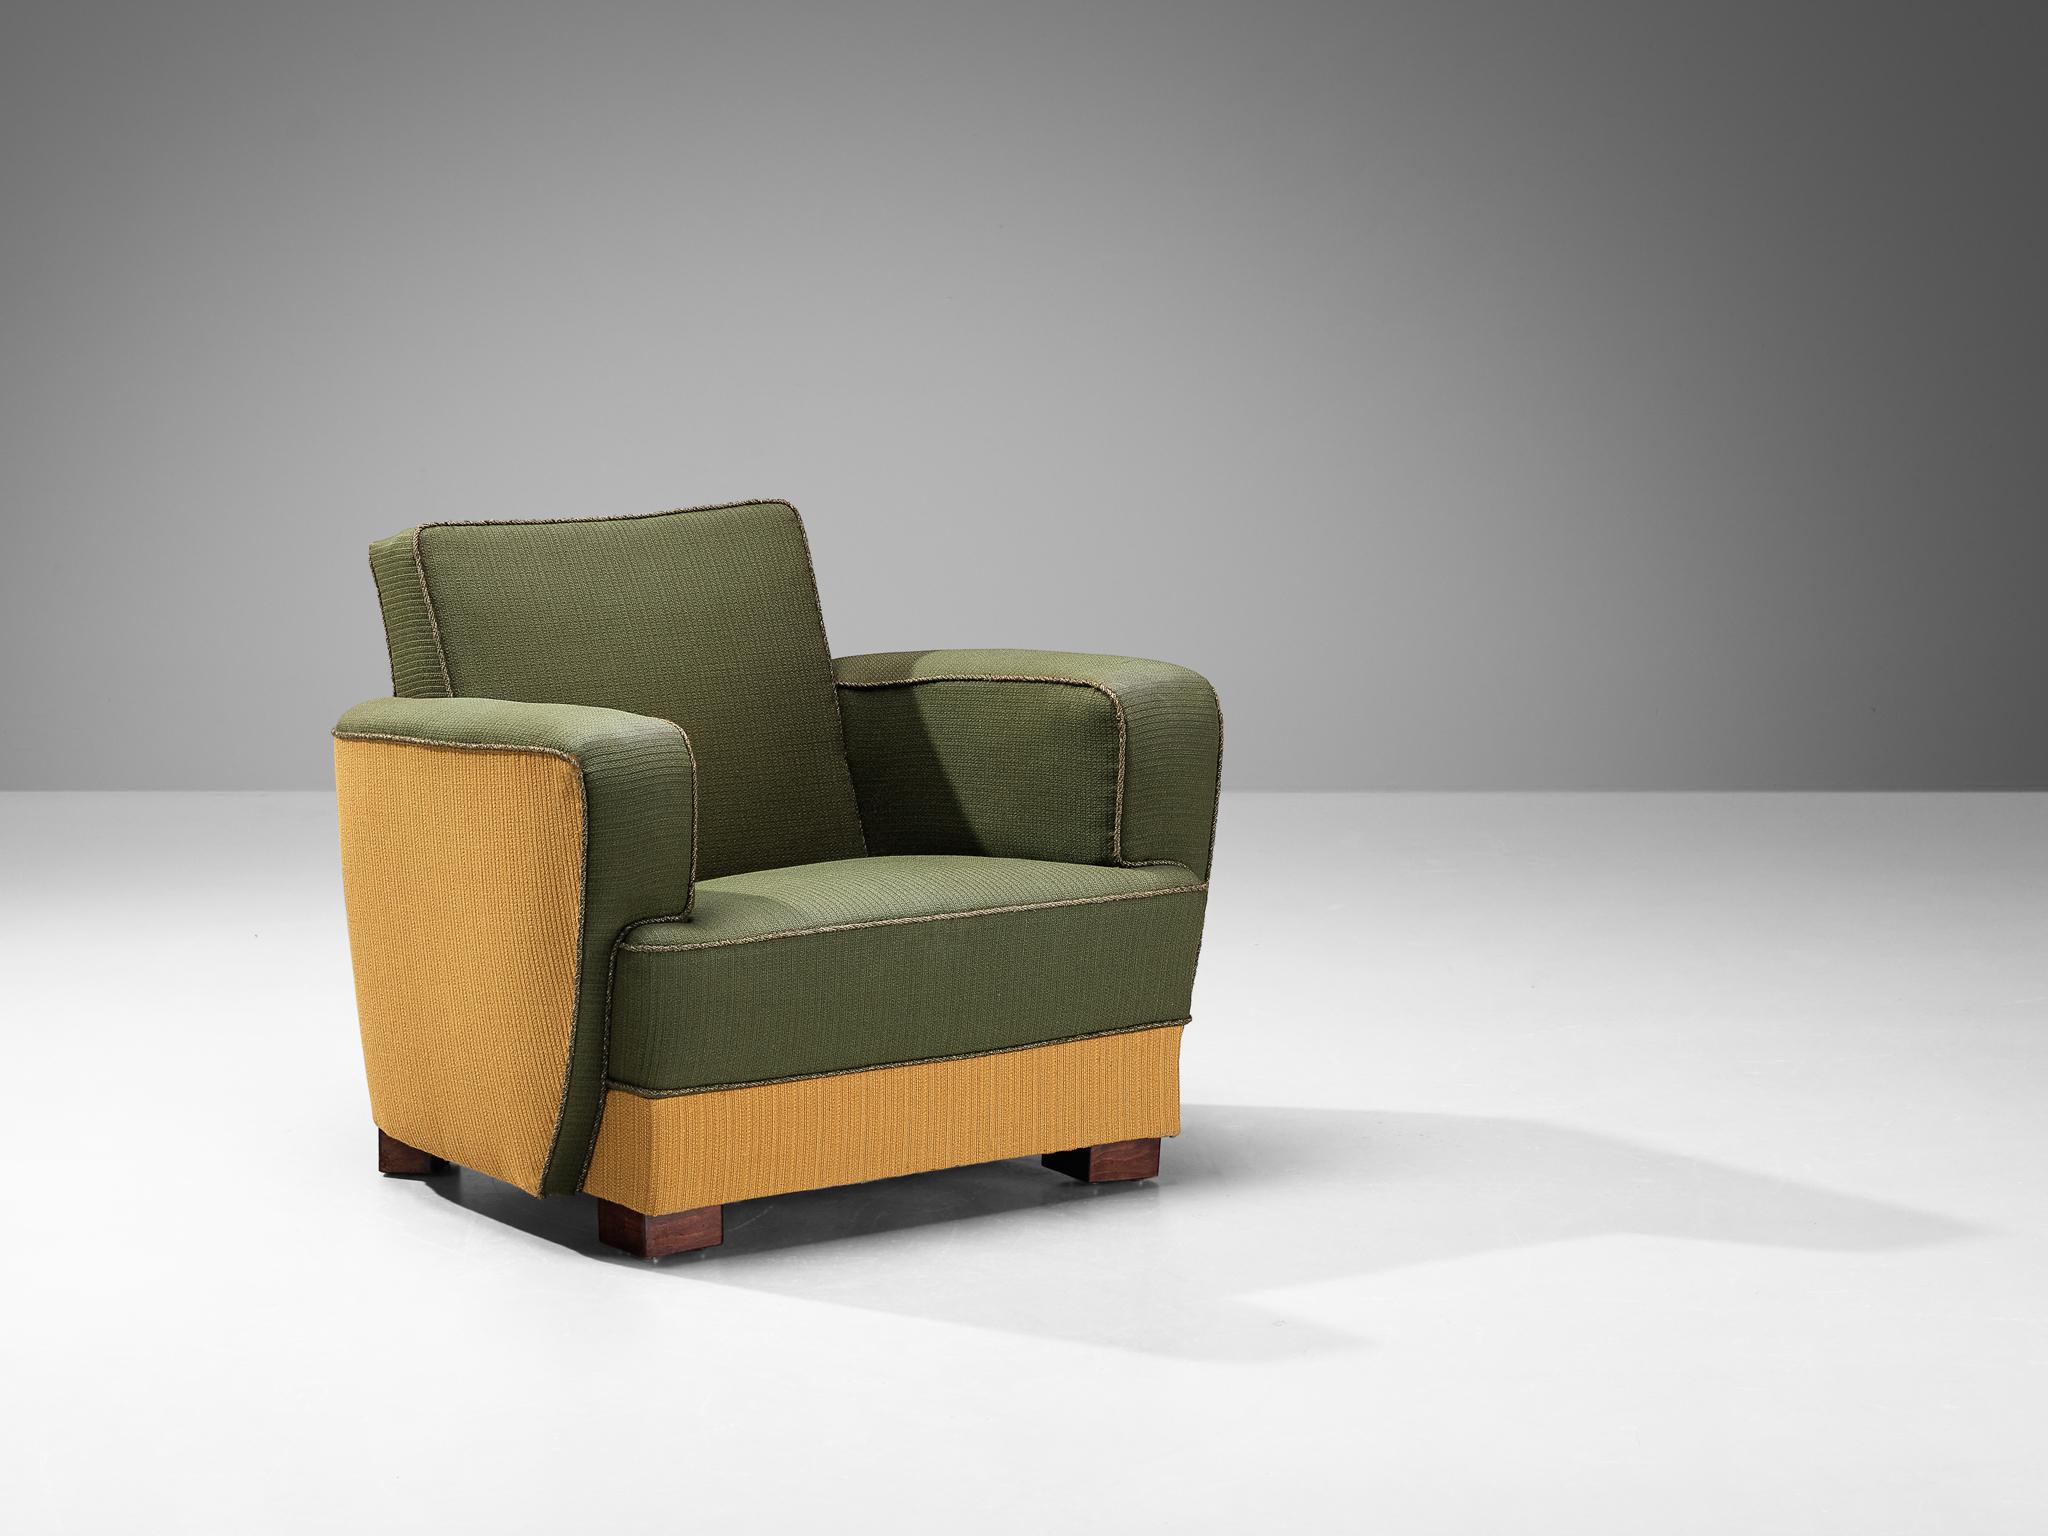 Dänischer Tischler, Loungesessel, Buche und Stoff, Dänemark, 1930er Jahre.

Zweifarbiger Sessel eines dänischen Möbelschreiners mit geometrischen Formen. Der Sitz ist dick und die Armlehnen sind dick, voll und gerade. Die Füße sind maskulin und